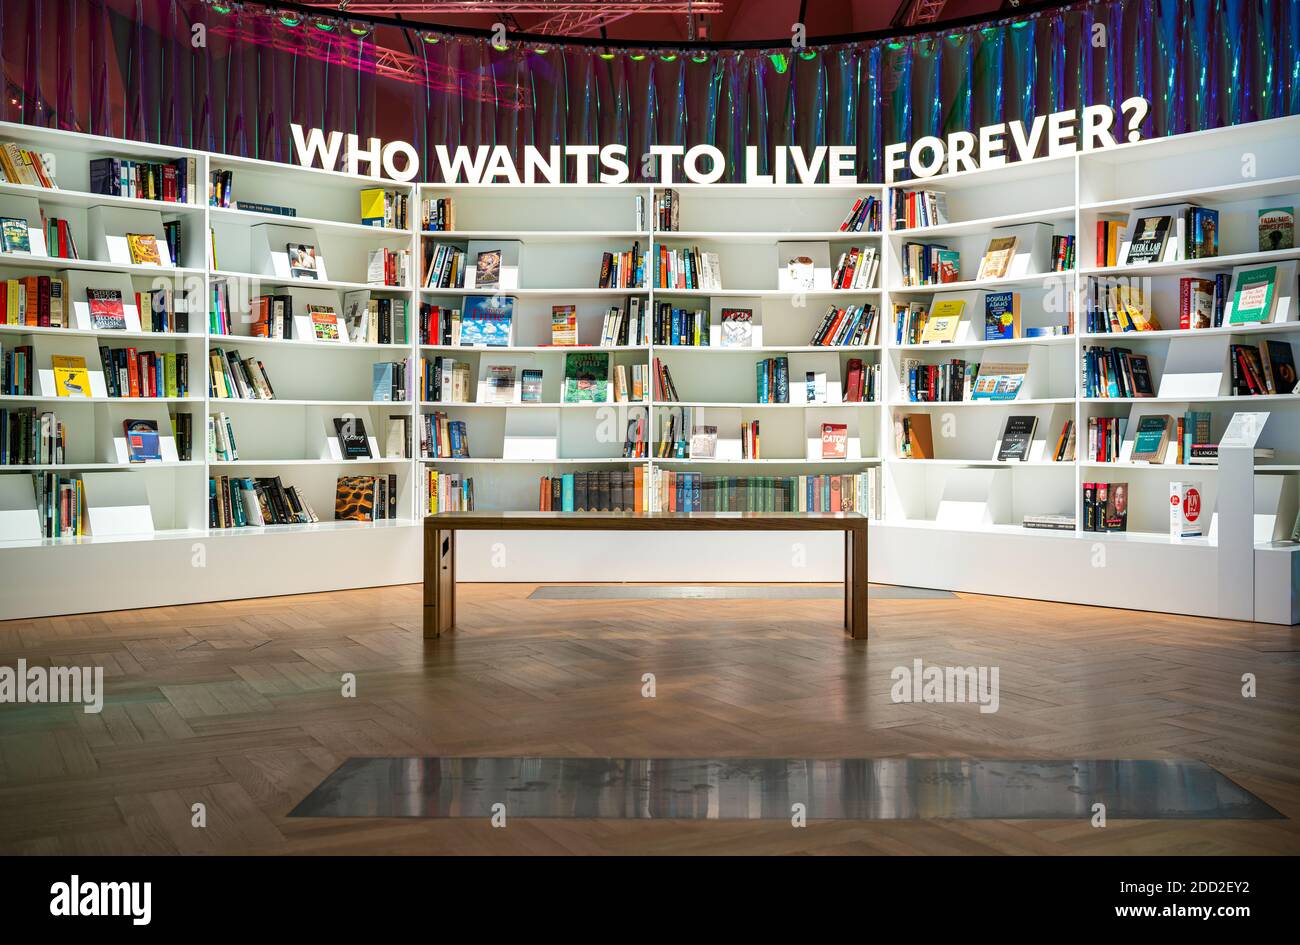 Qui veut vivre pour toujours ? Une bibliothèque pour reconstruire la civilisation. Le futur commence ici au Victoria and Albert Museum de Londres Banque D'Images